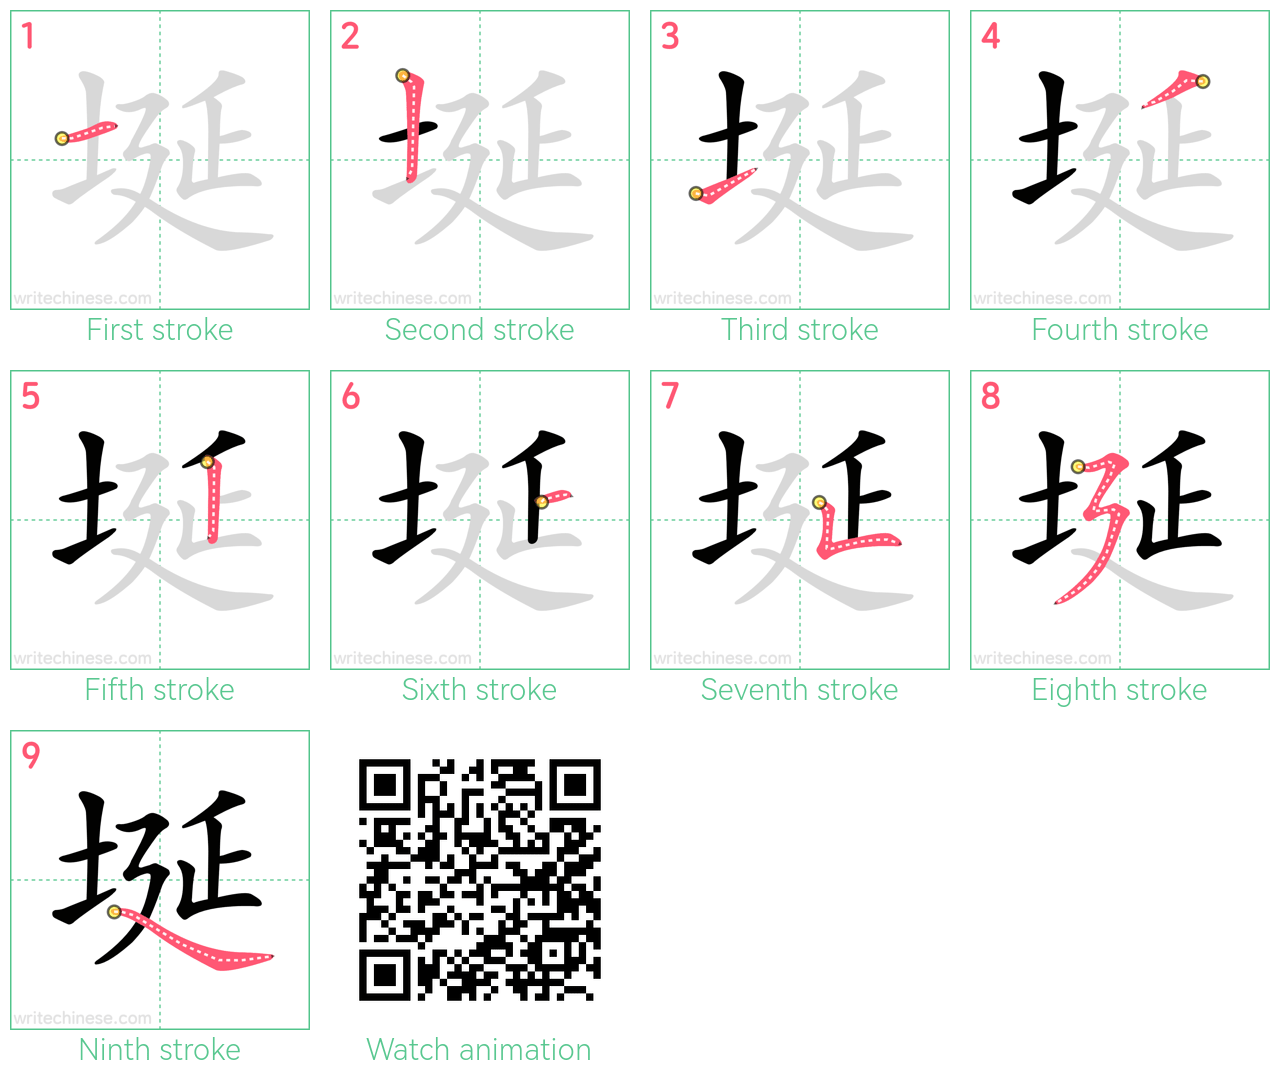 埏 step-by-step stroke order diagrams